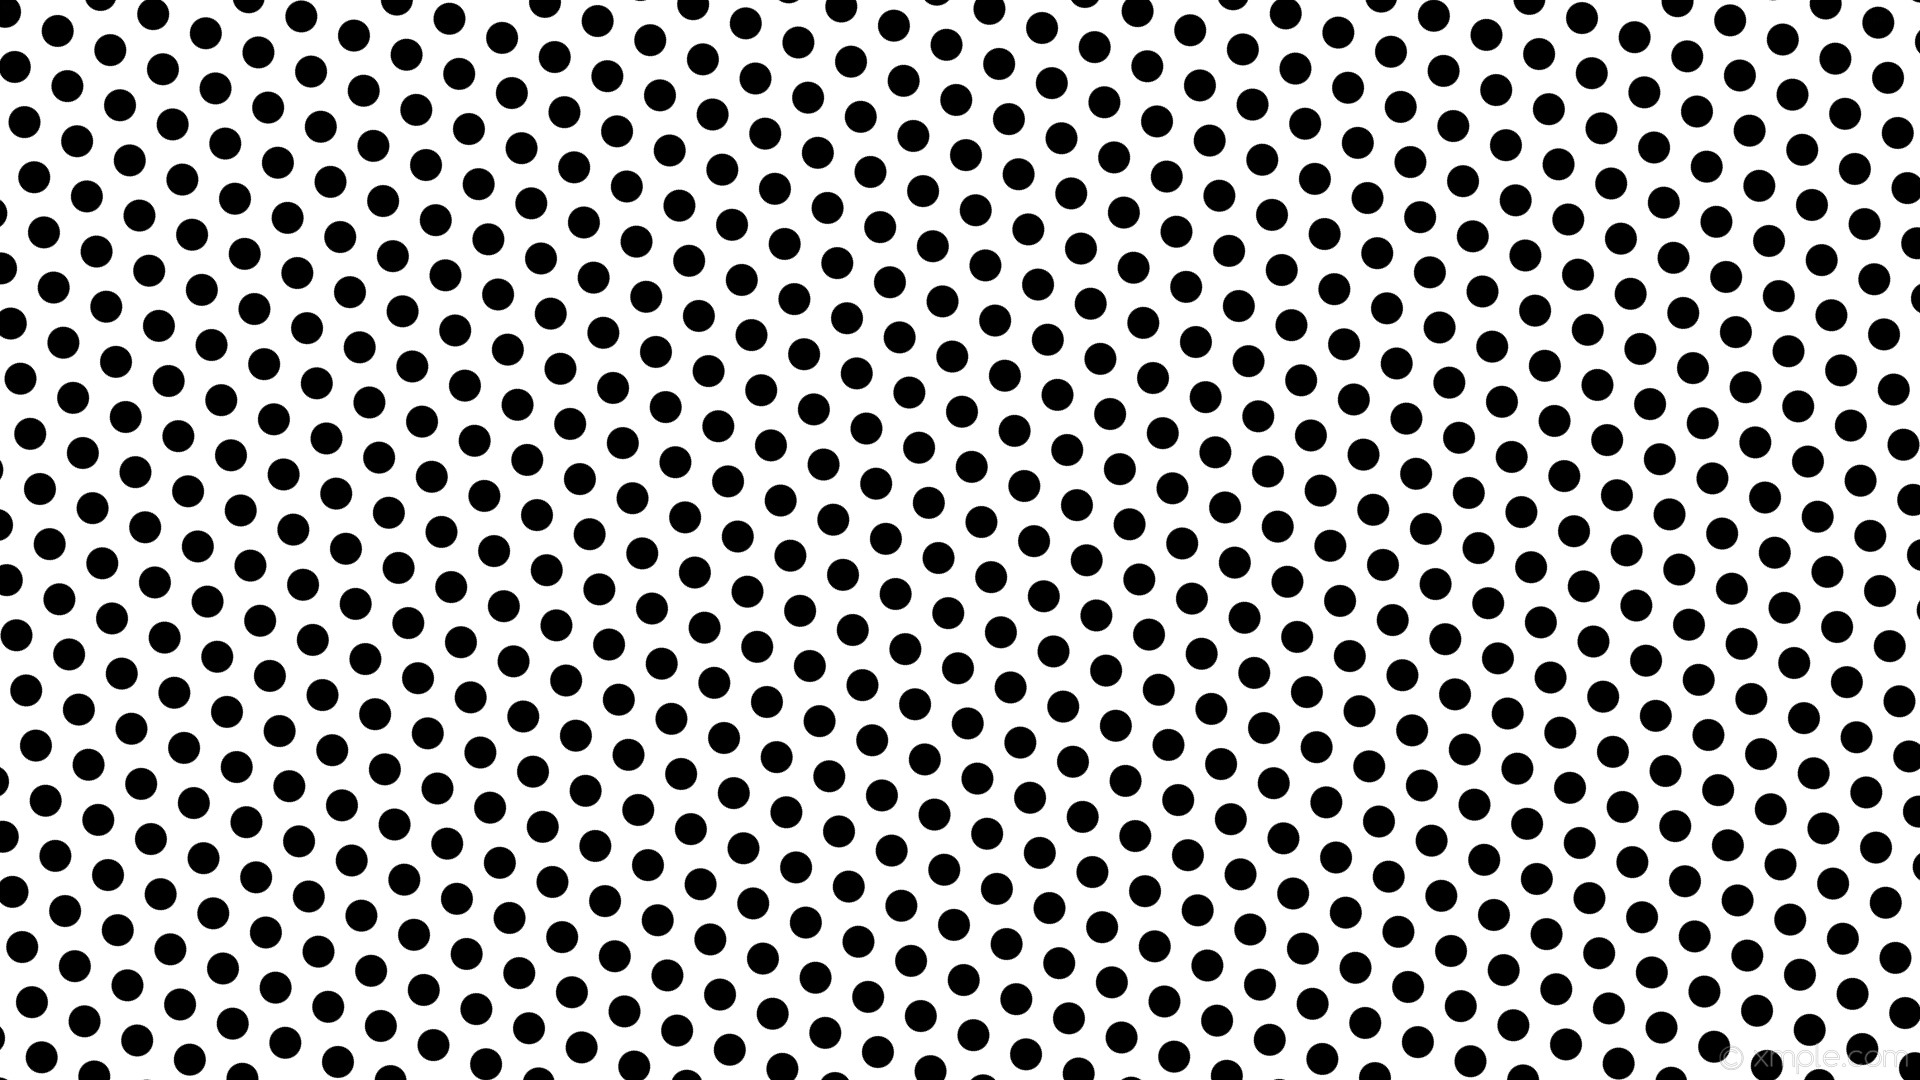 1920x1080 wallpaper white polka dots black hexagon #ffffff #000000 diagonal 40Â° 32px  56px